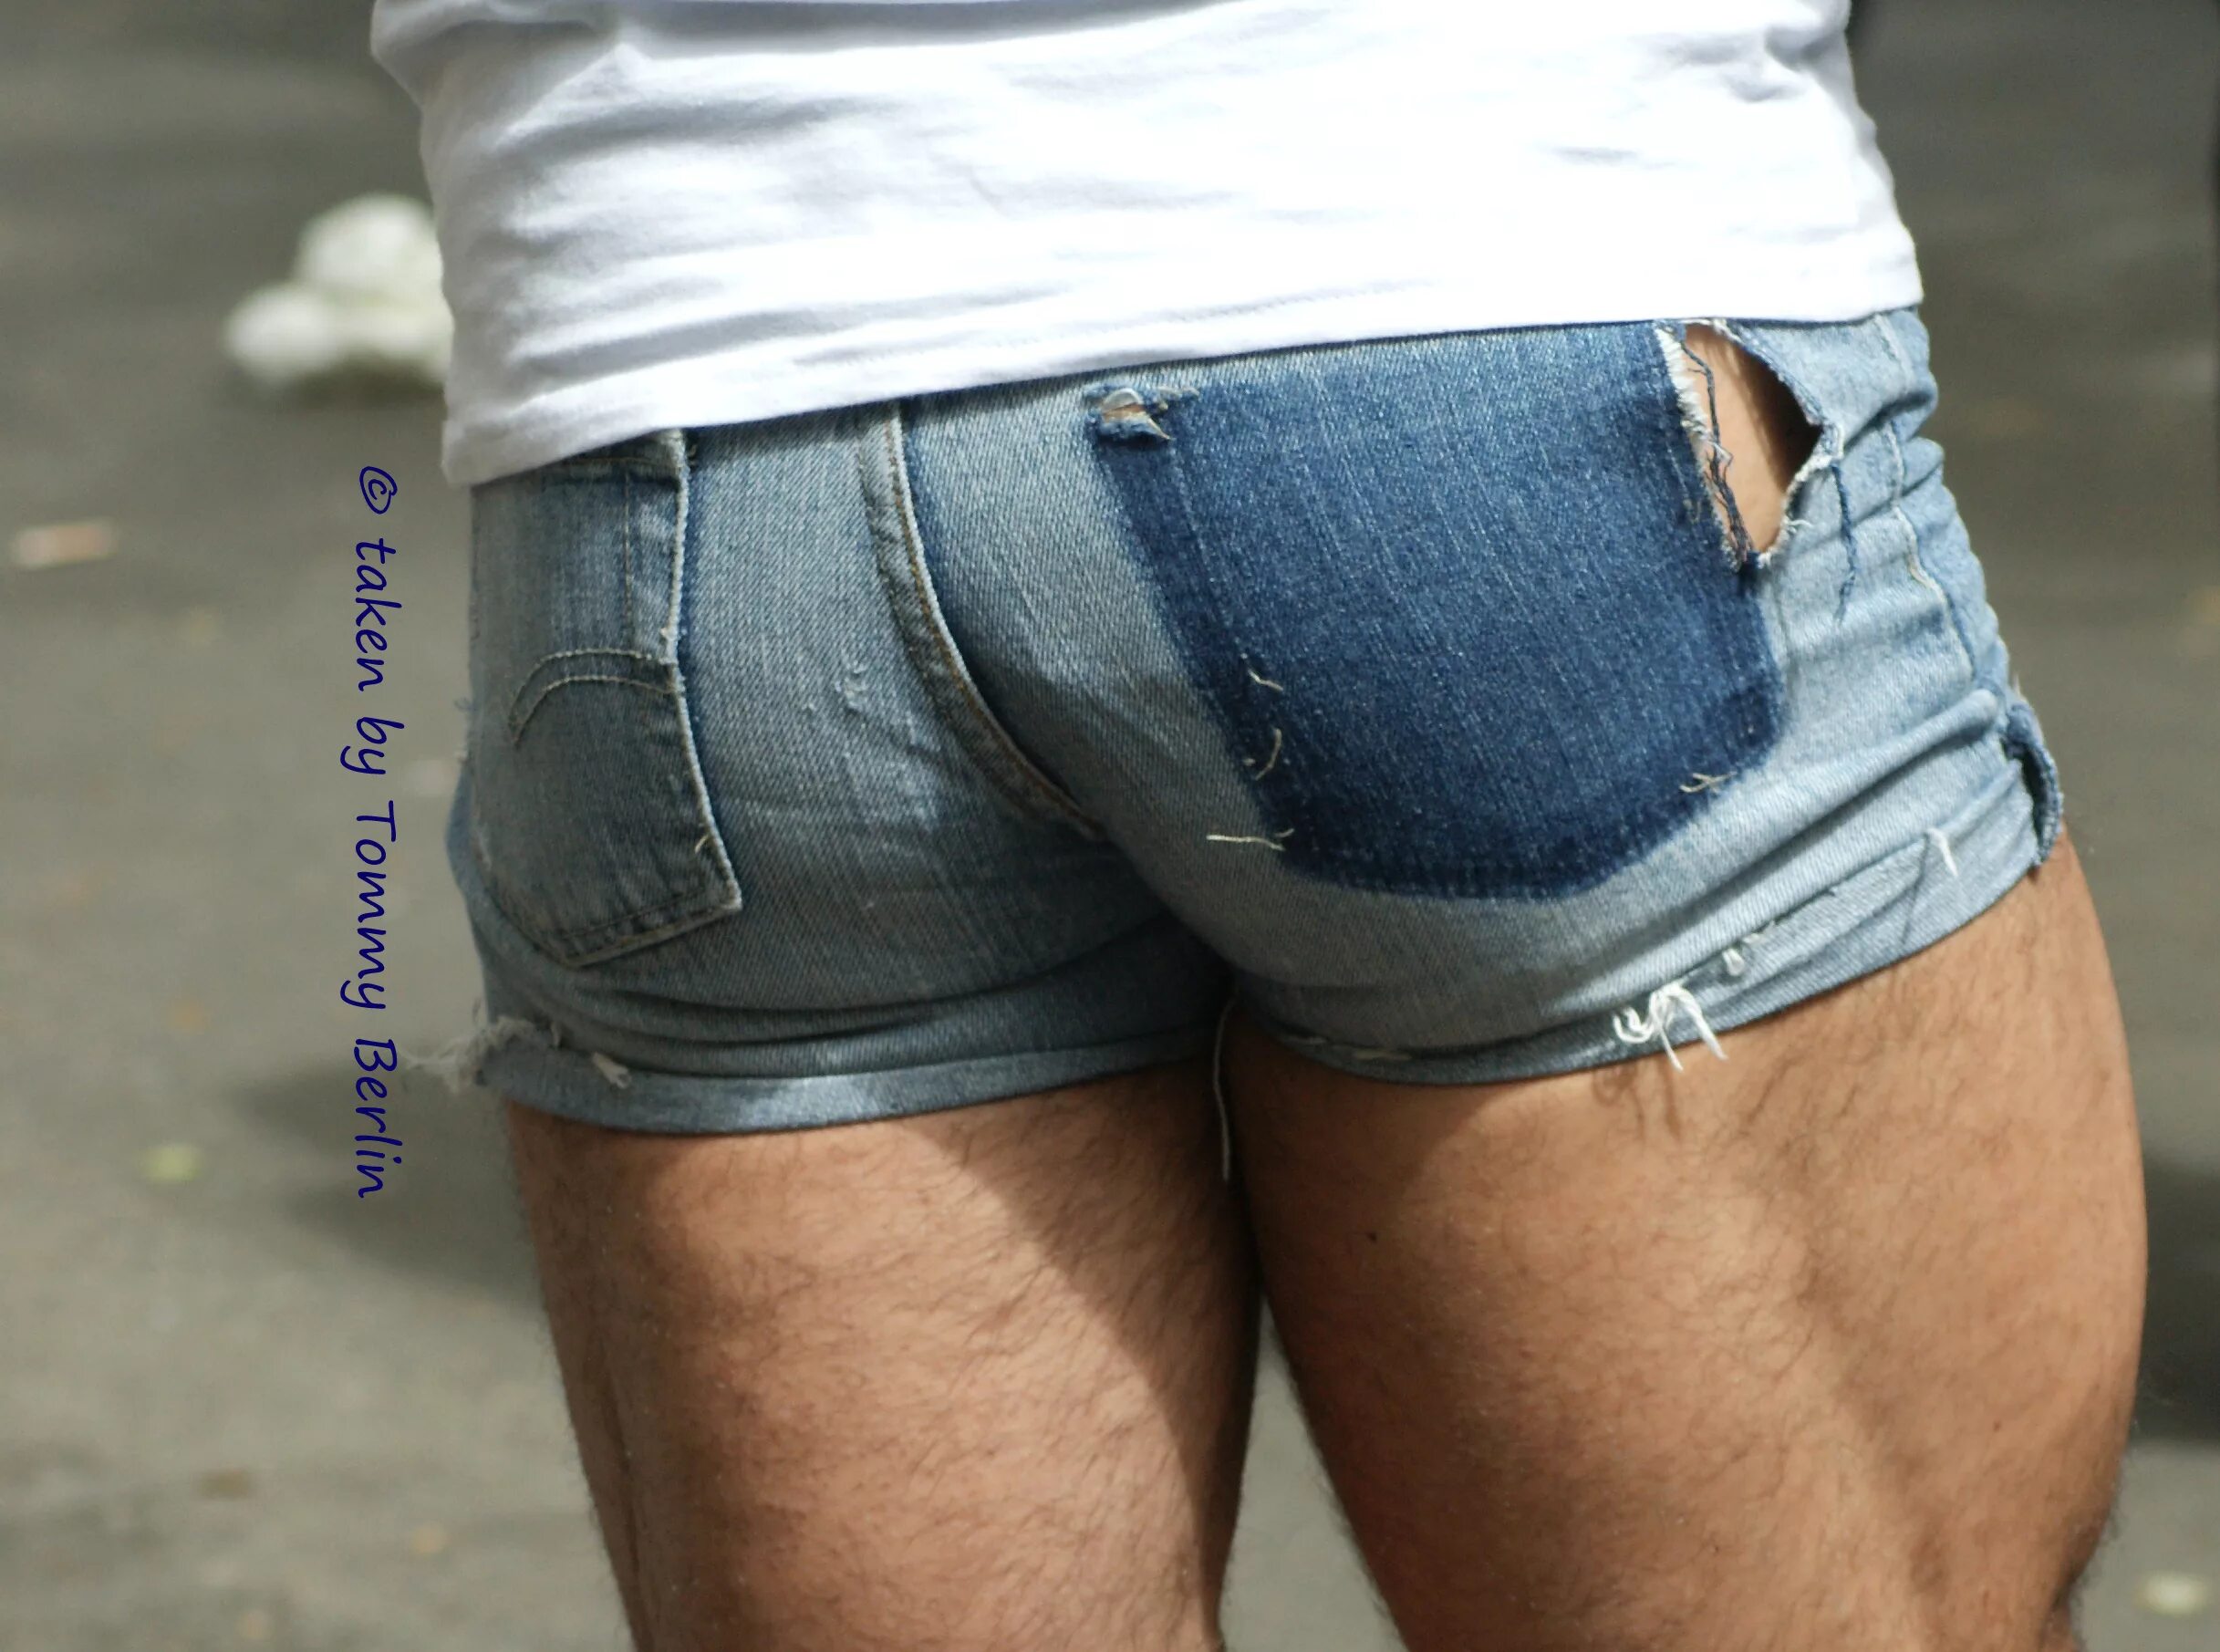 Мужик в джинсовых шортах. Мужчины в коротких джинсовых шортах. Мужской зад в джинсах. Мужской зад в рваных джинсах. Очко в шортах